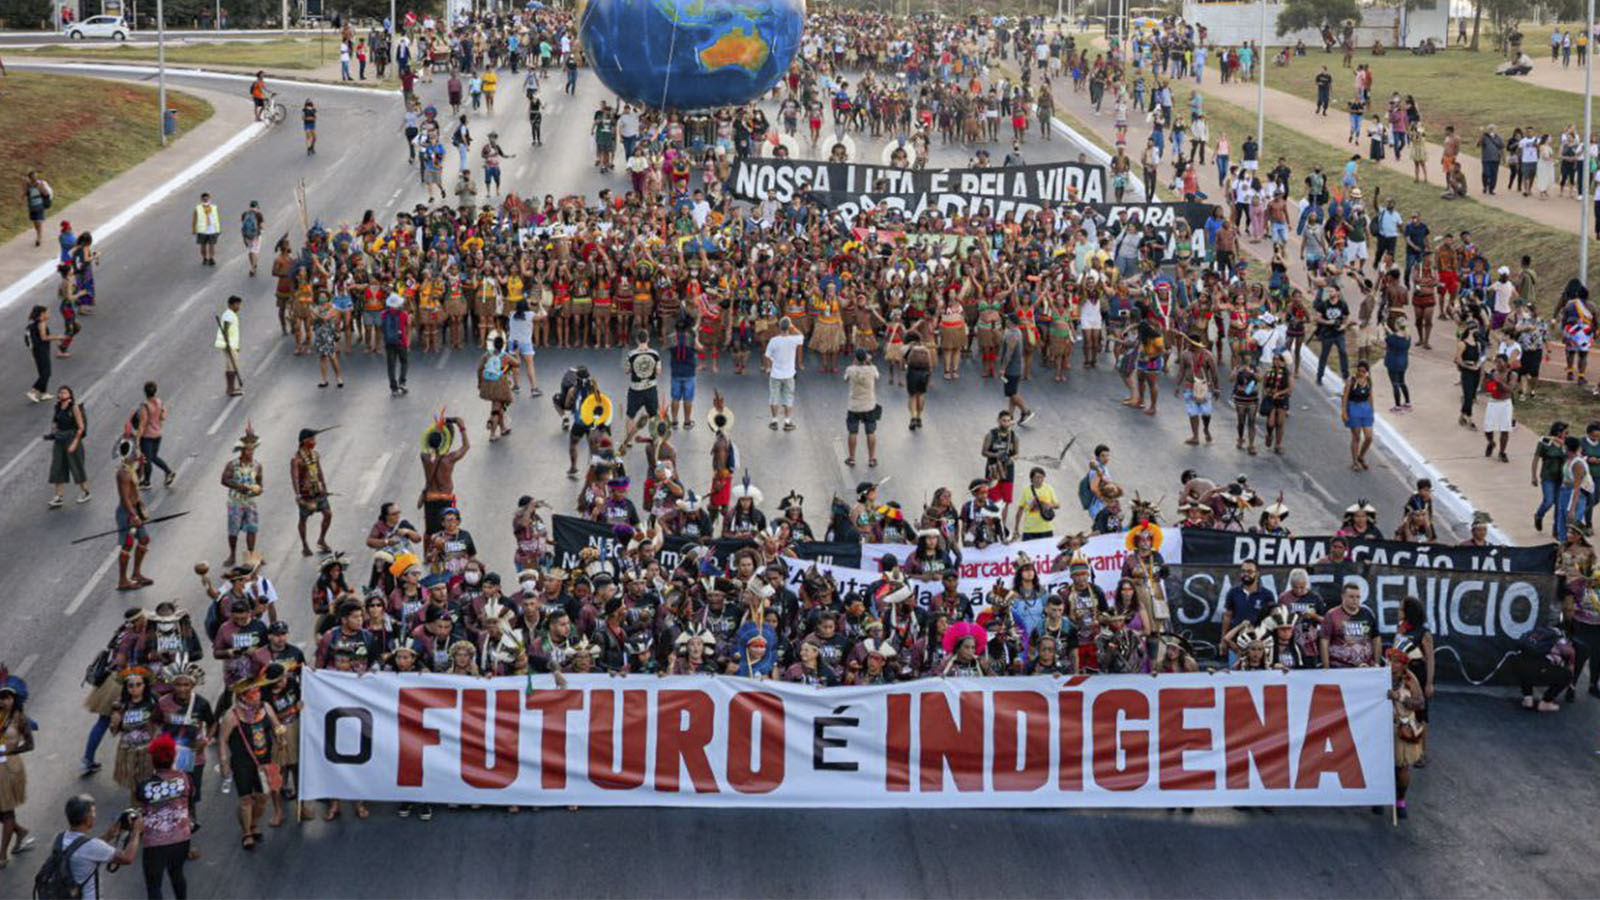 lideranças indígenas refletem sobre o legado